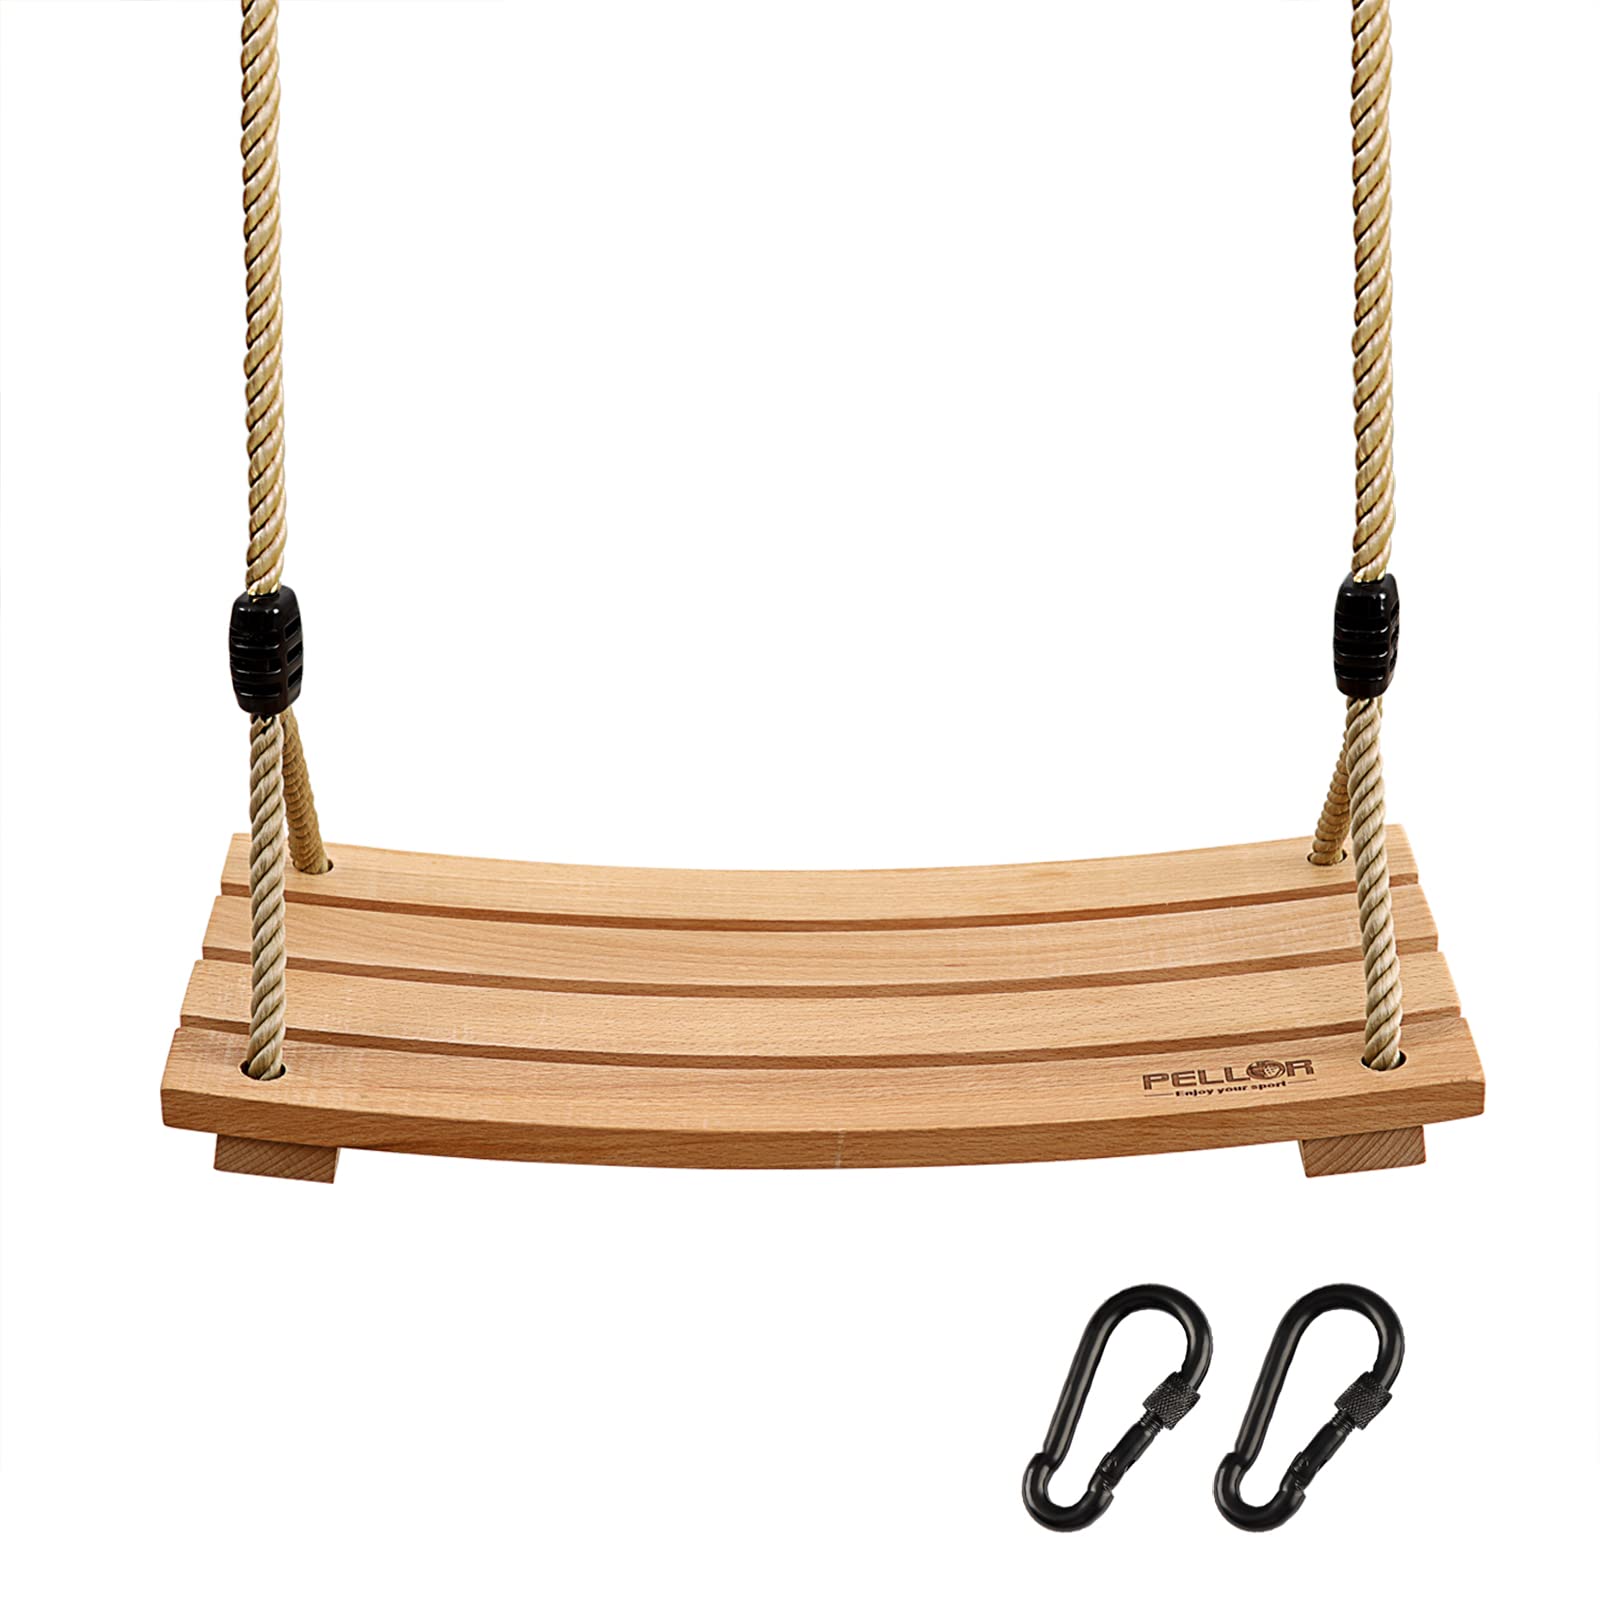 PELLOR Wood Tree Swing Seat, Indoor Outdoor Rope Wooden Swing Set for  Children Adult Kids 17.7x7.9x0.6 inch Burlywood 17.7x7.9x0.6 inch